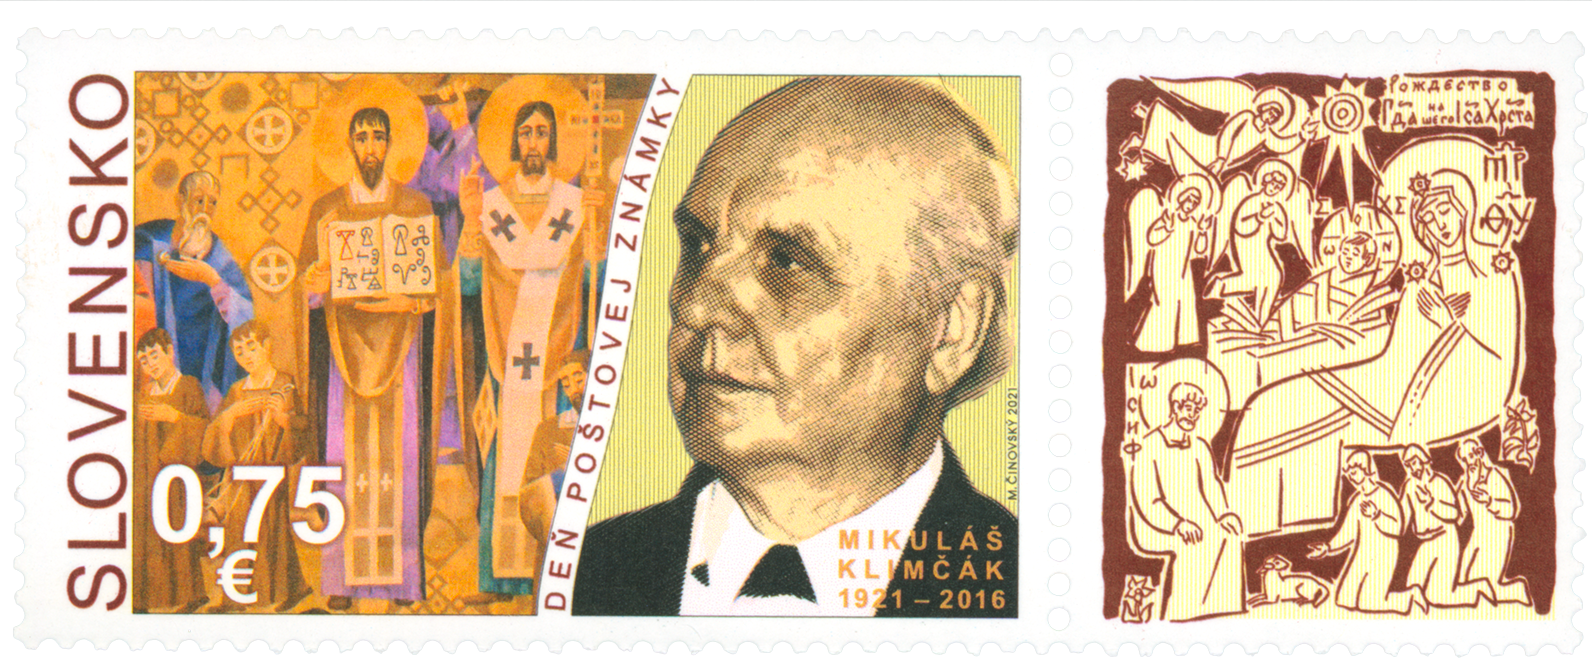 756 - Deň poštovej známky: Mikuláš Klimčák (1921 – 2016)